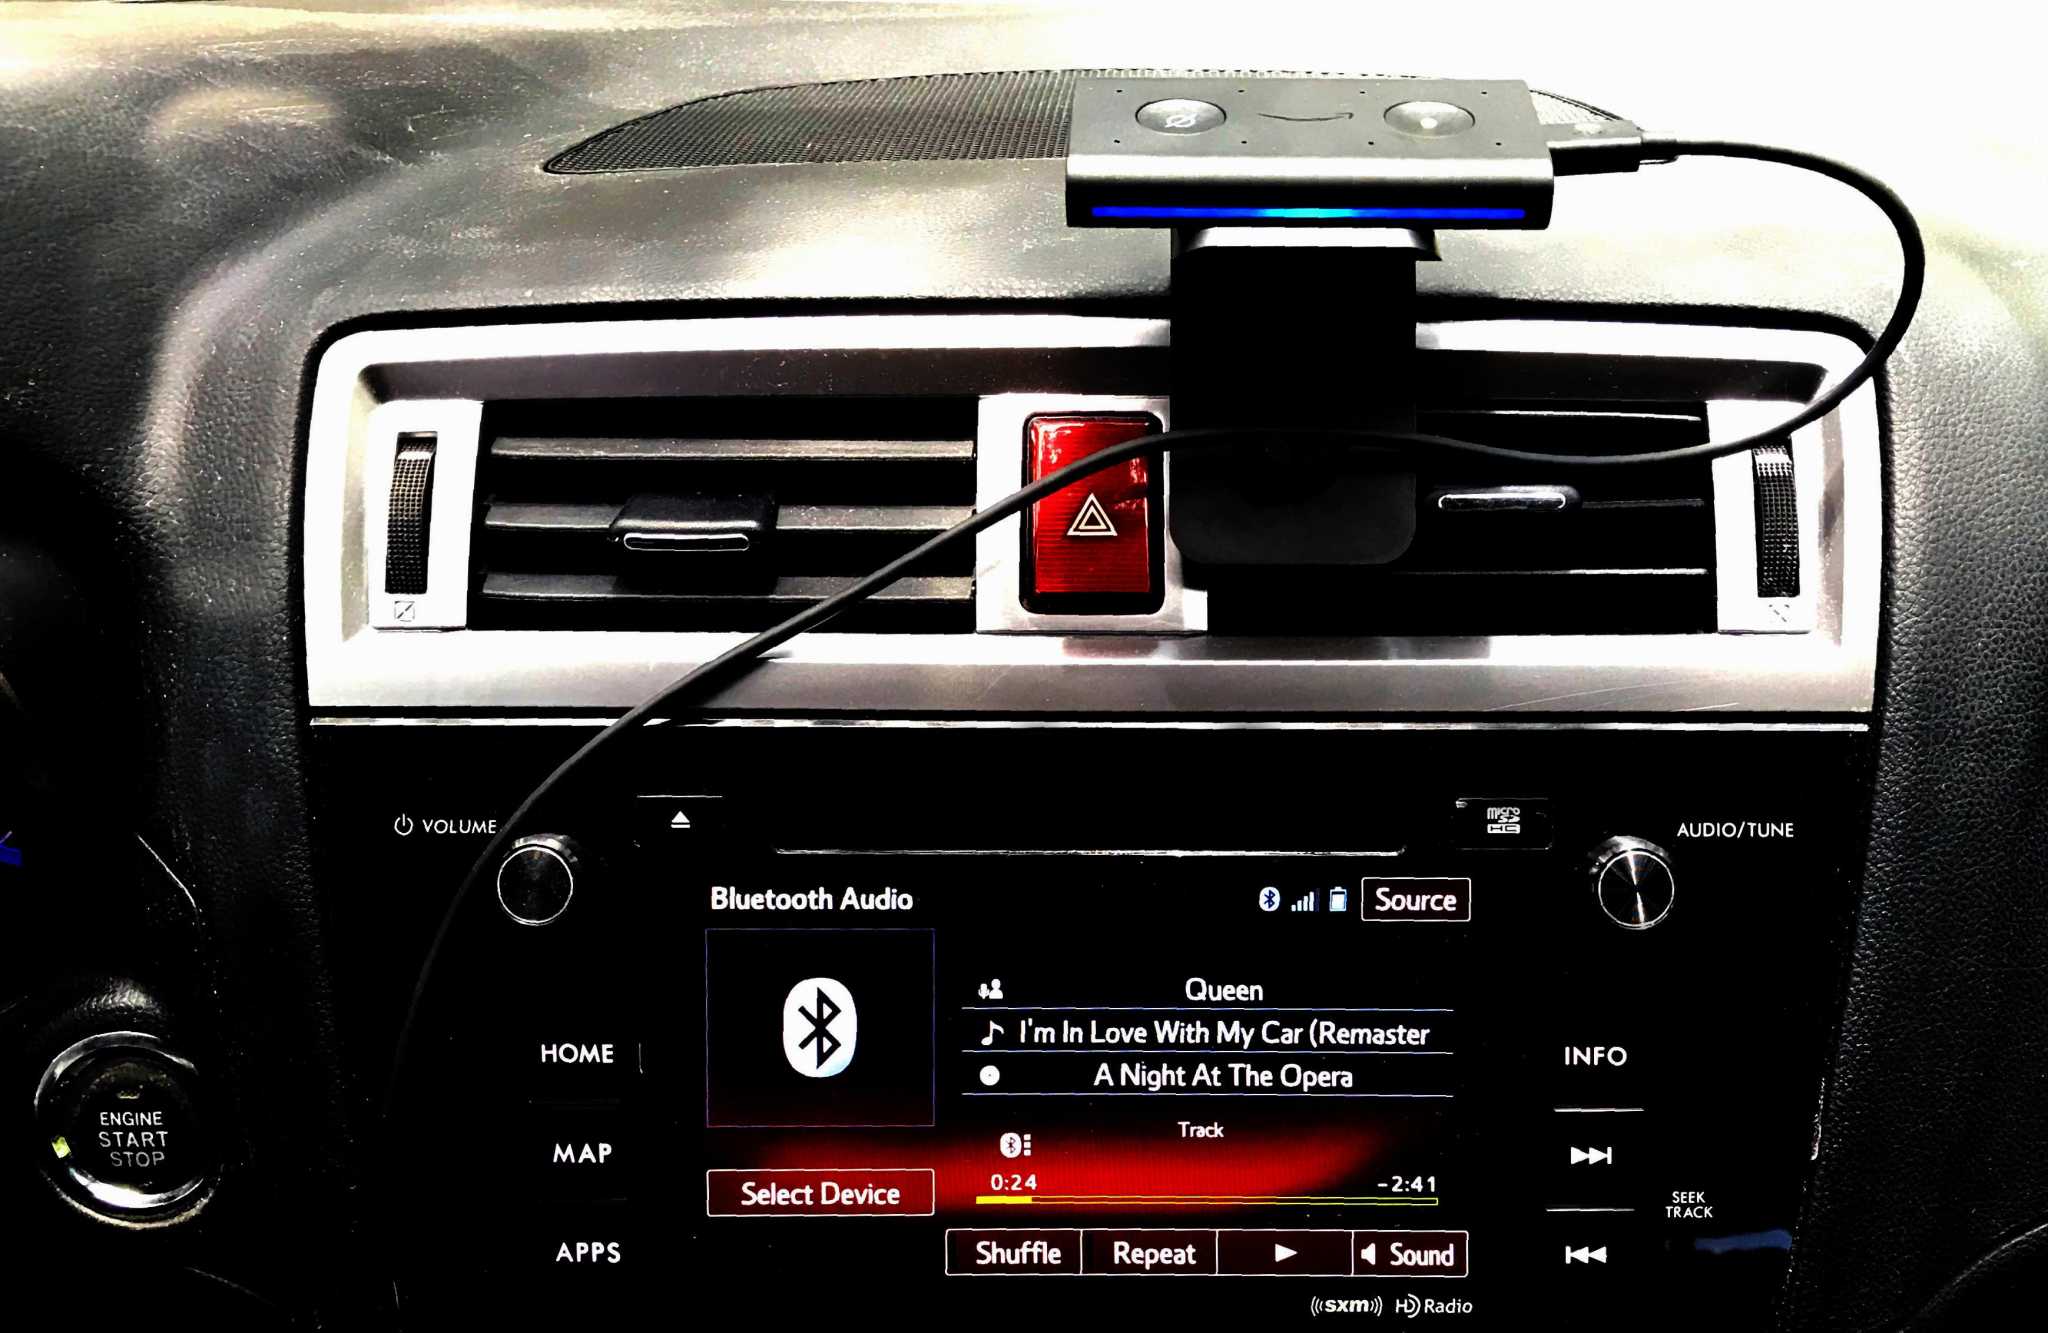 Echo Auto Gives Your Car An Alexa Copilot - SlashGear